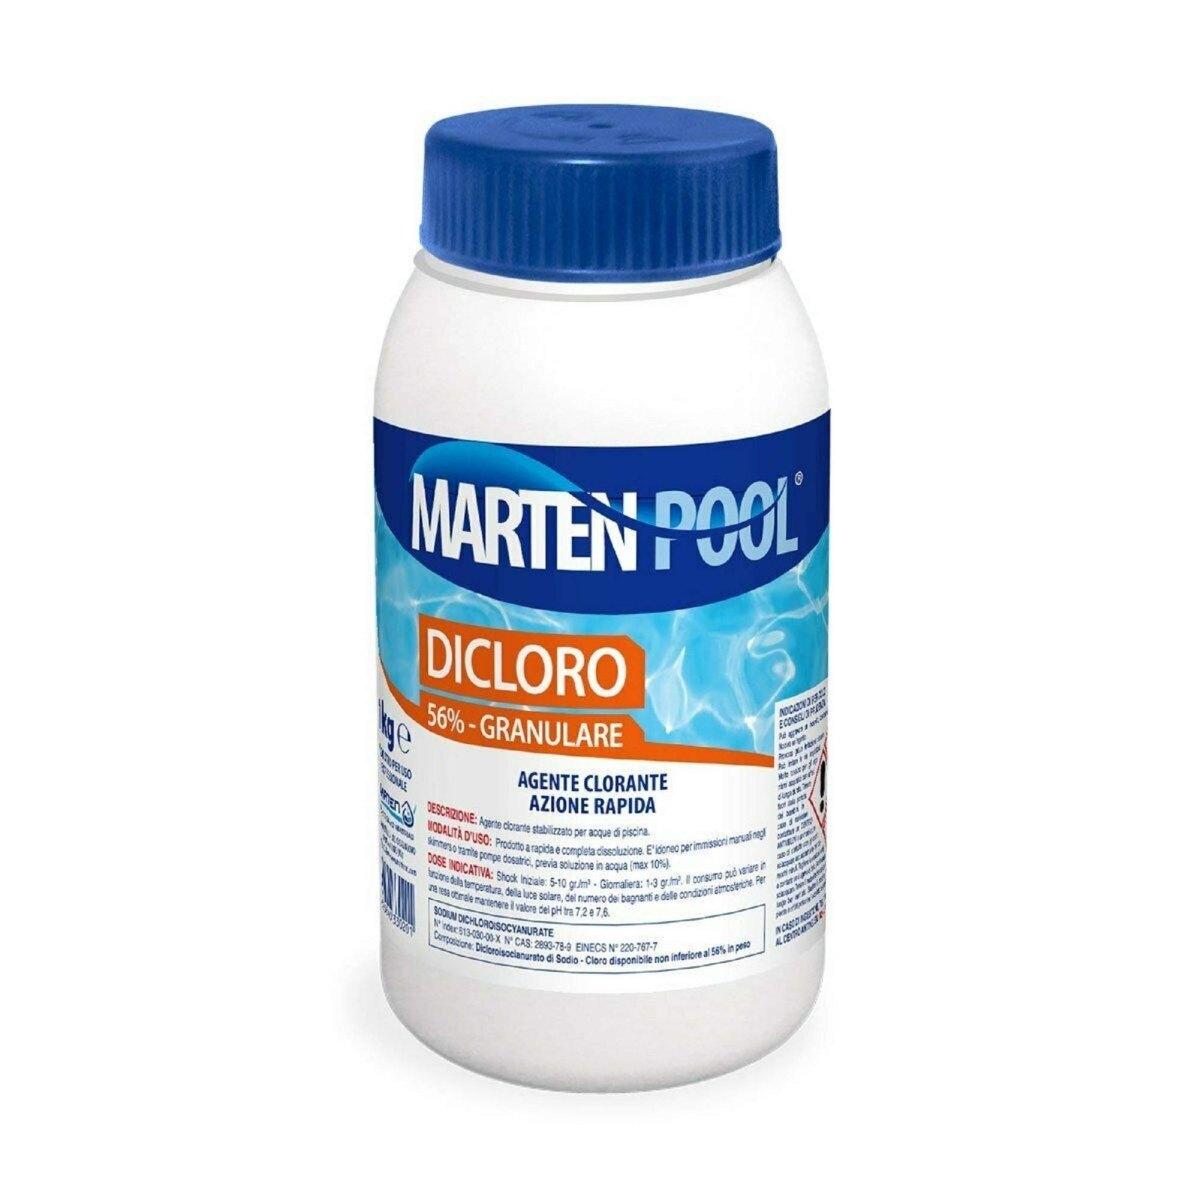 MARTEN Dicloro 56% granulare 1kg - Agente clorante stabilizzato per acque di piscina